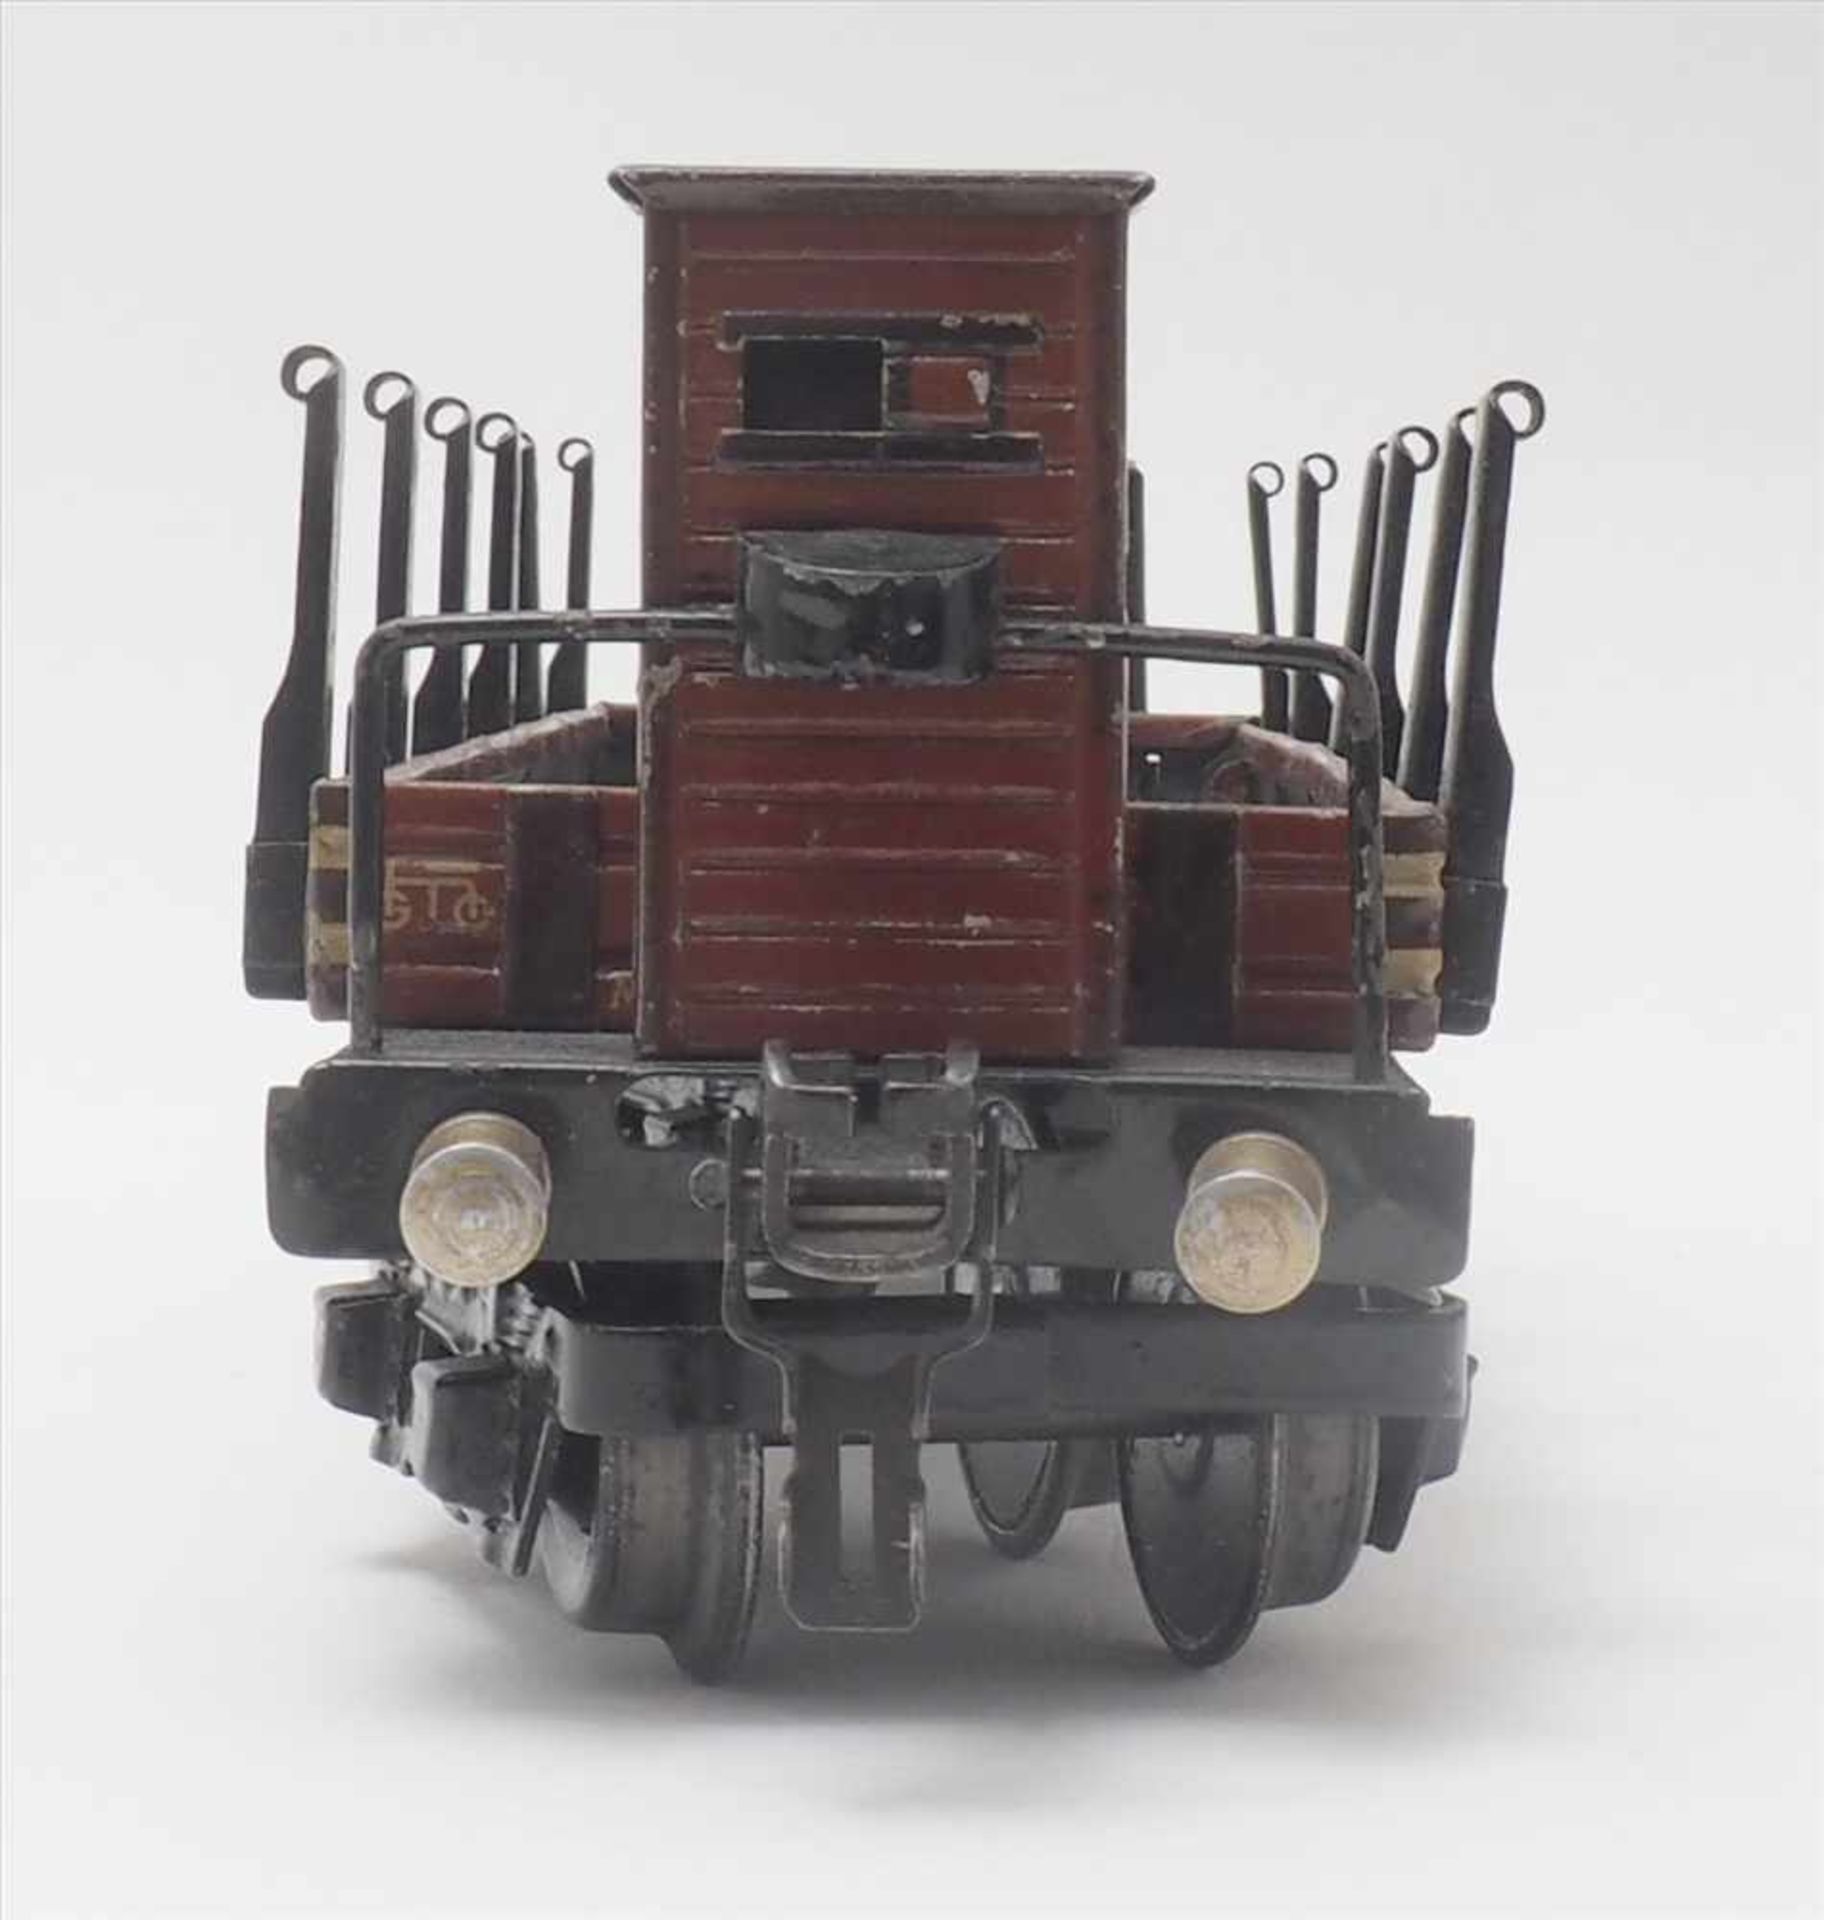 Zwei GüterwagenMärklin Spur 0. 1930-er Jahre. Hochbordwagen und Rungenwagen mit Bremserhaus. - Bild 8 aus 8